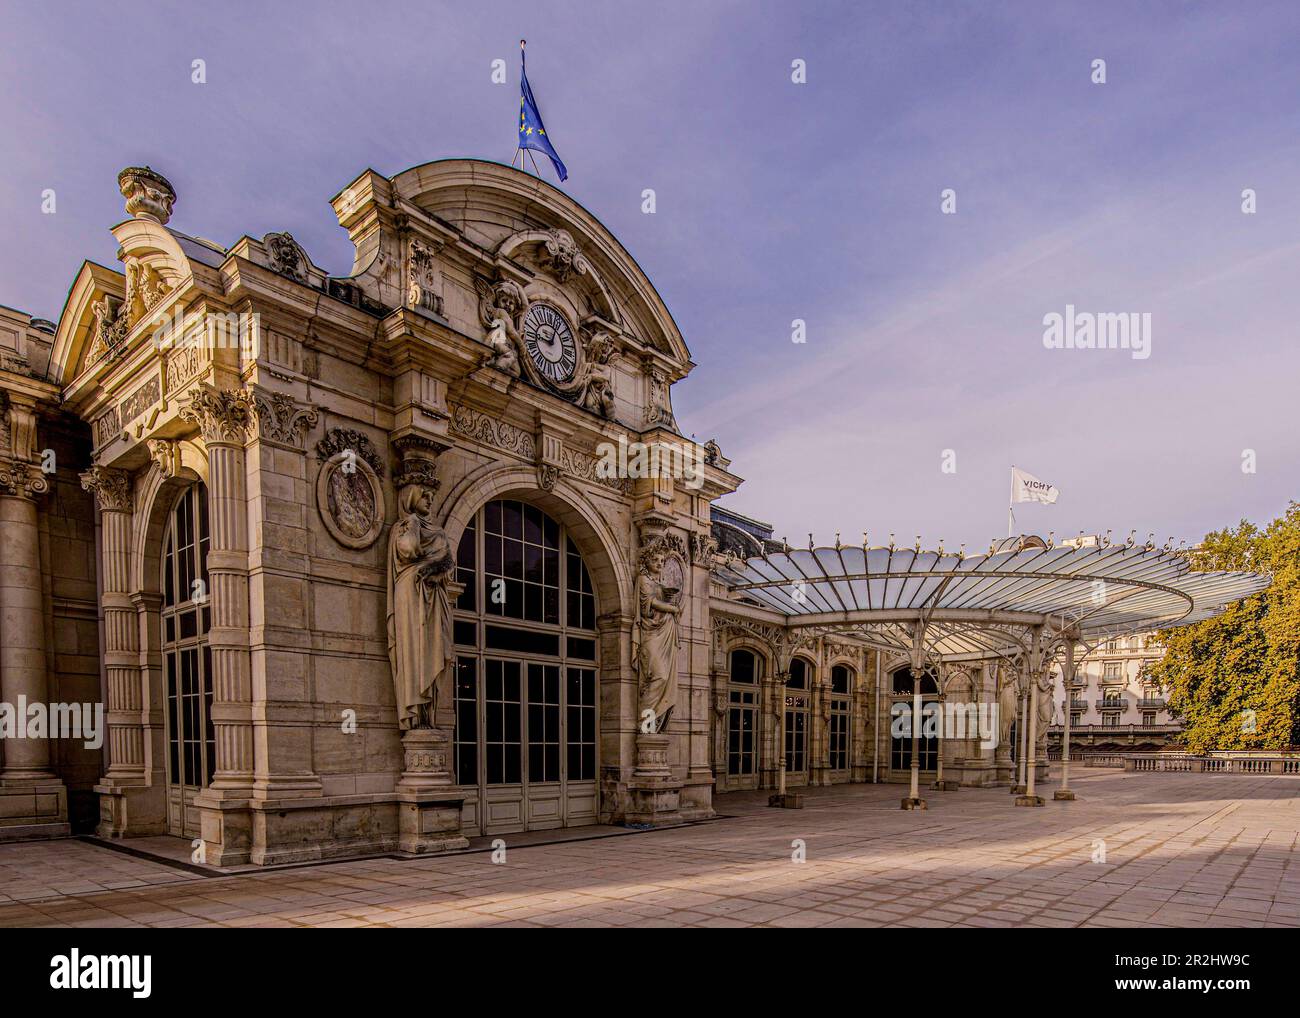 Palais des Congrès - Opéra, Vichy, Auvergne-Rhône-Alpes, France Banque D'Images